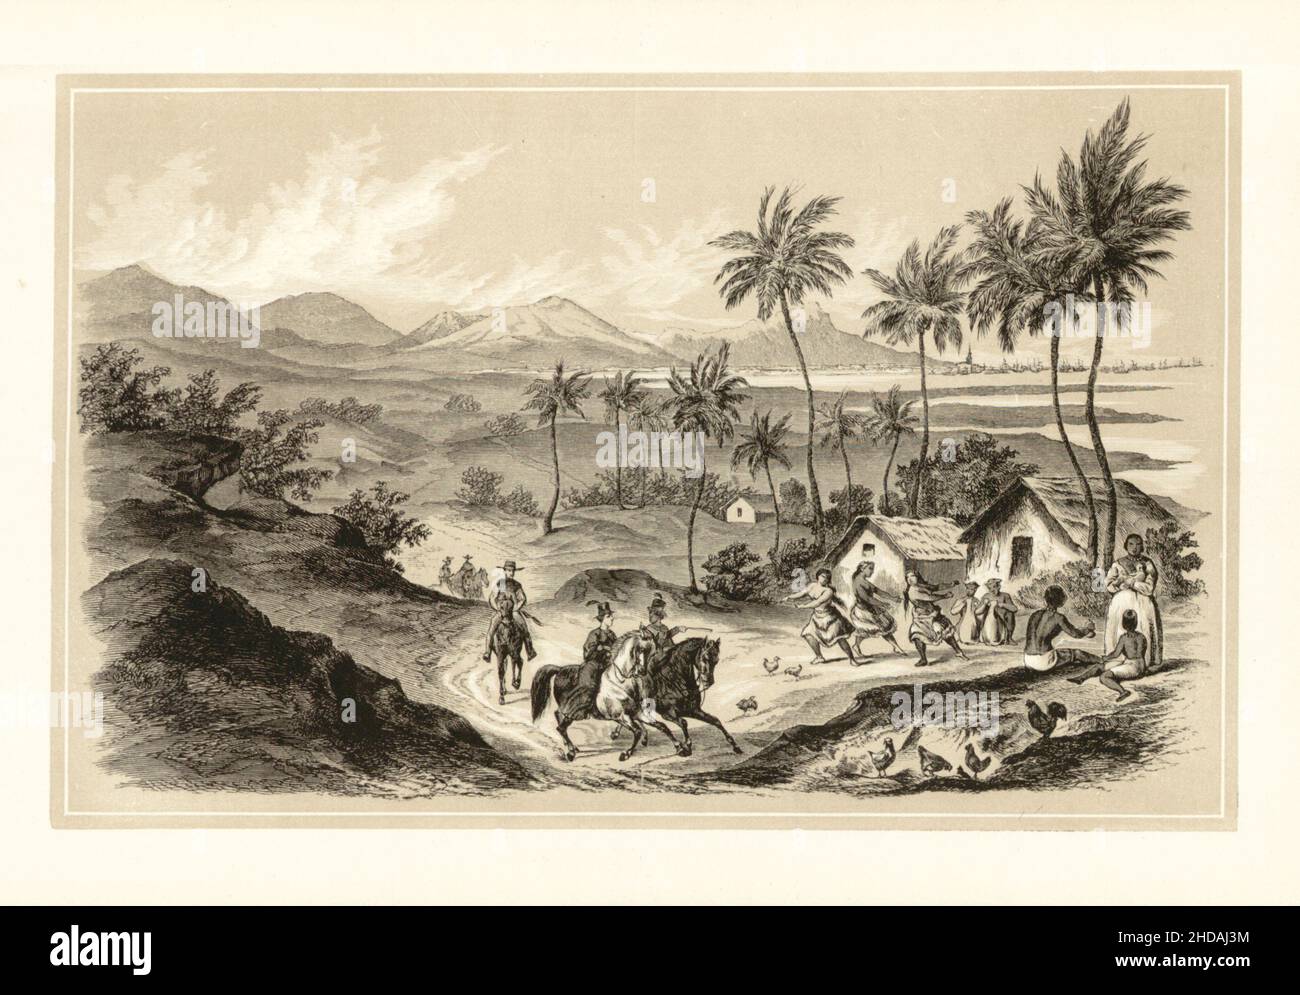 Antica litografia del regno hawaiano del 19th secolo: Honolulu nell'isola di Ouahou. 1856 spedizione di Commodore Perry Foto Stock